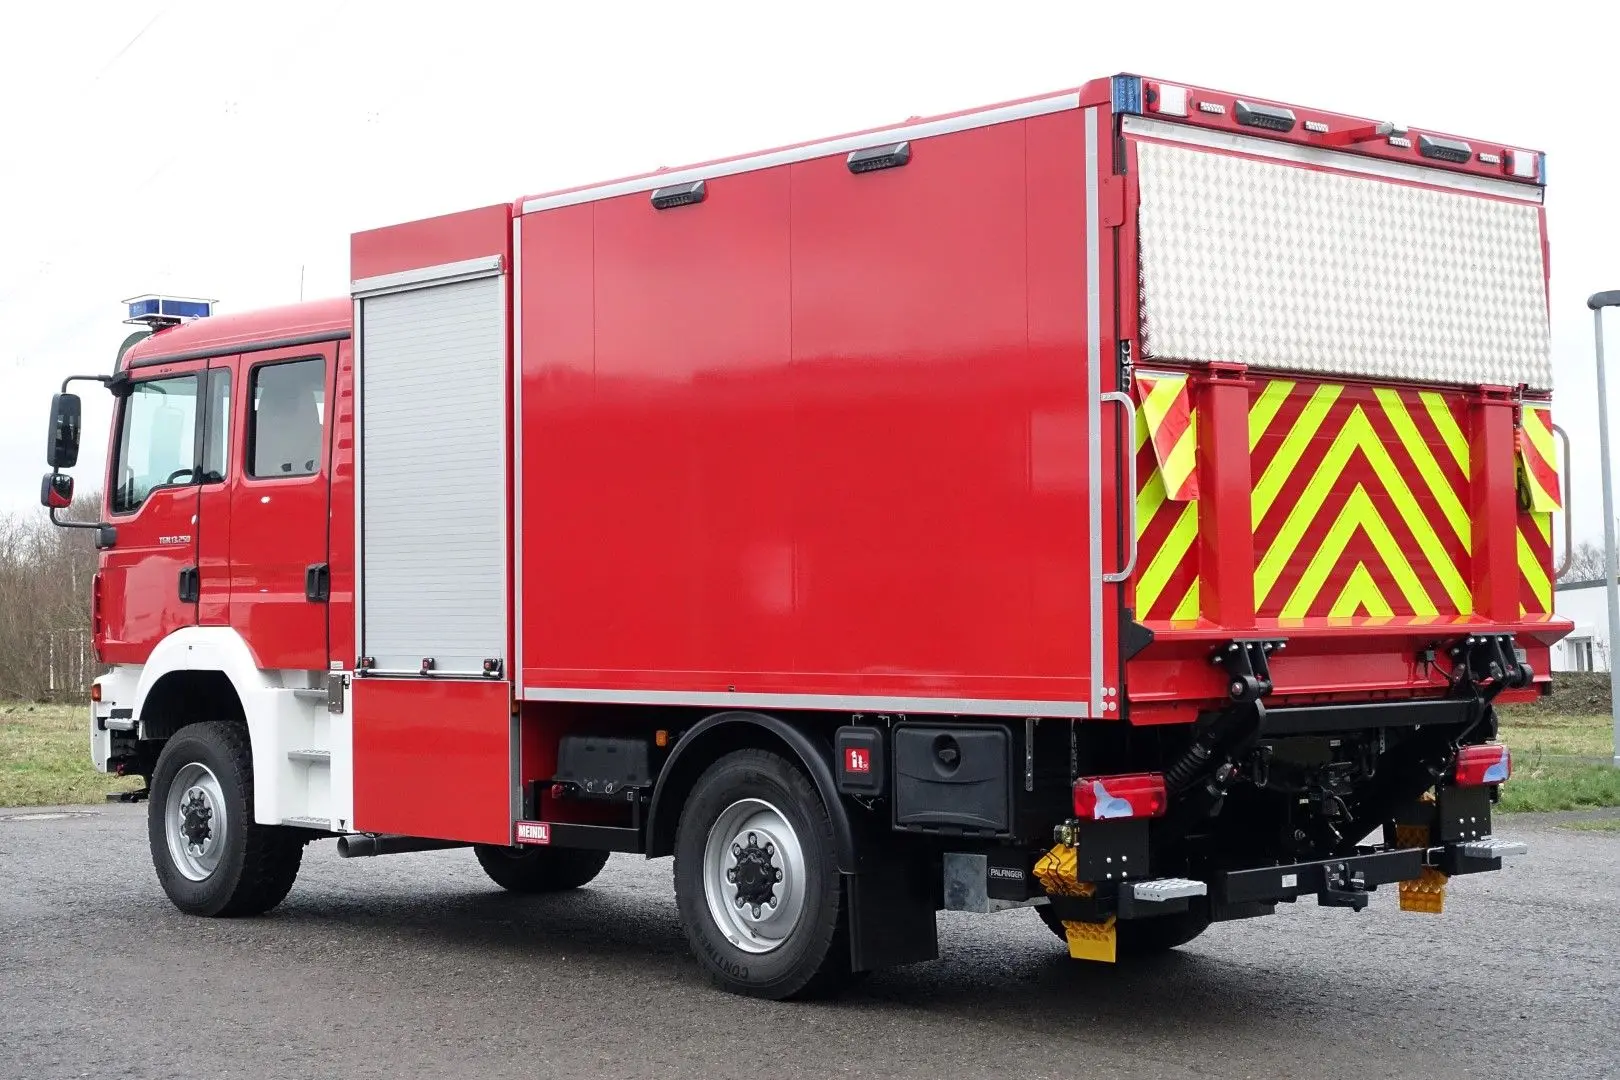 GW-L2 Gerätewagen Feuerwehr Gütersloh